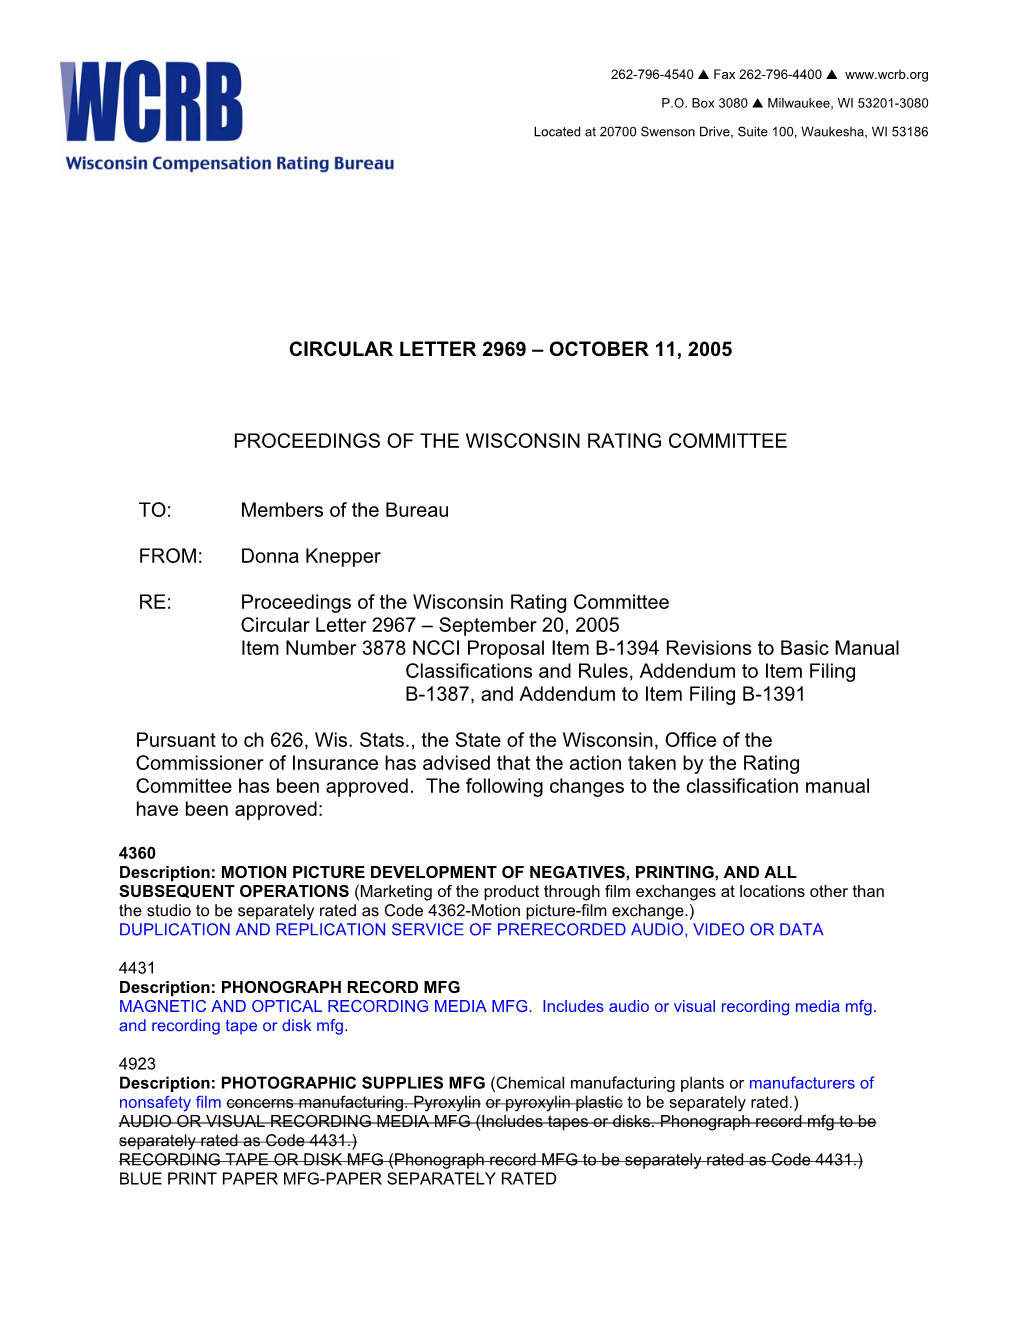 Circular Letter 2969 – October 11, 2005